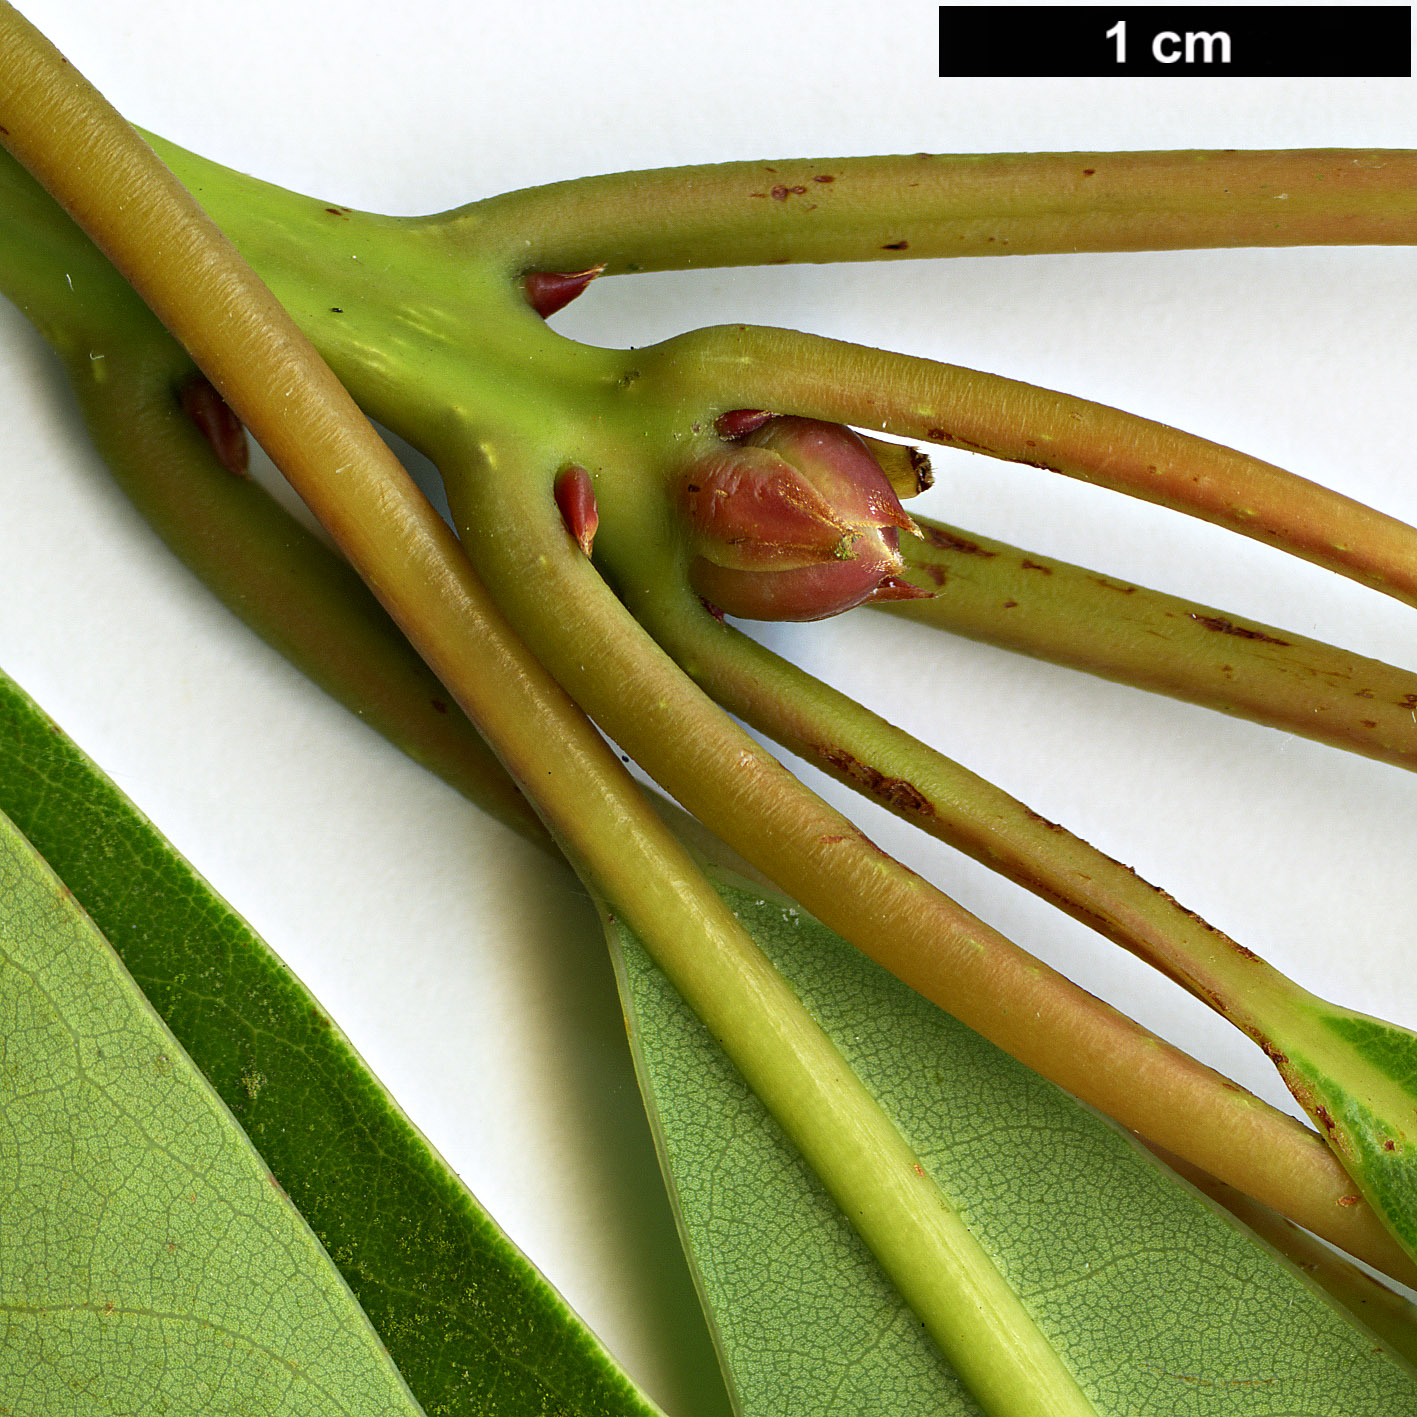 High resolution image: Family: Lauraceae - Genus: Persea - Taxon: ichangensis